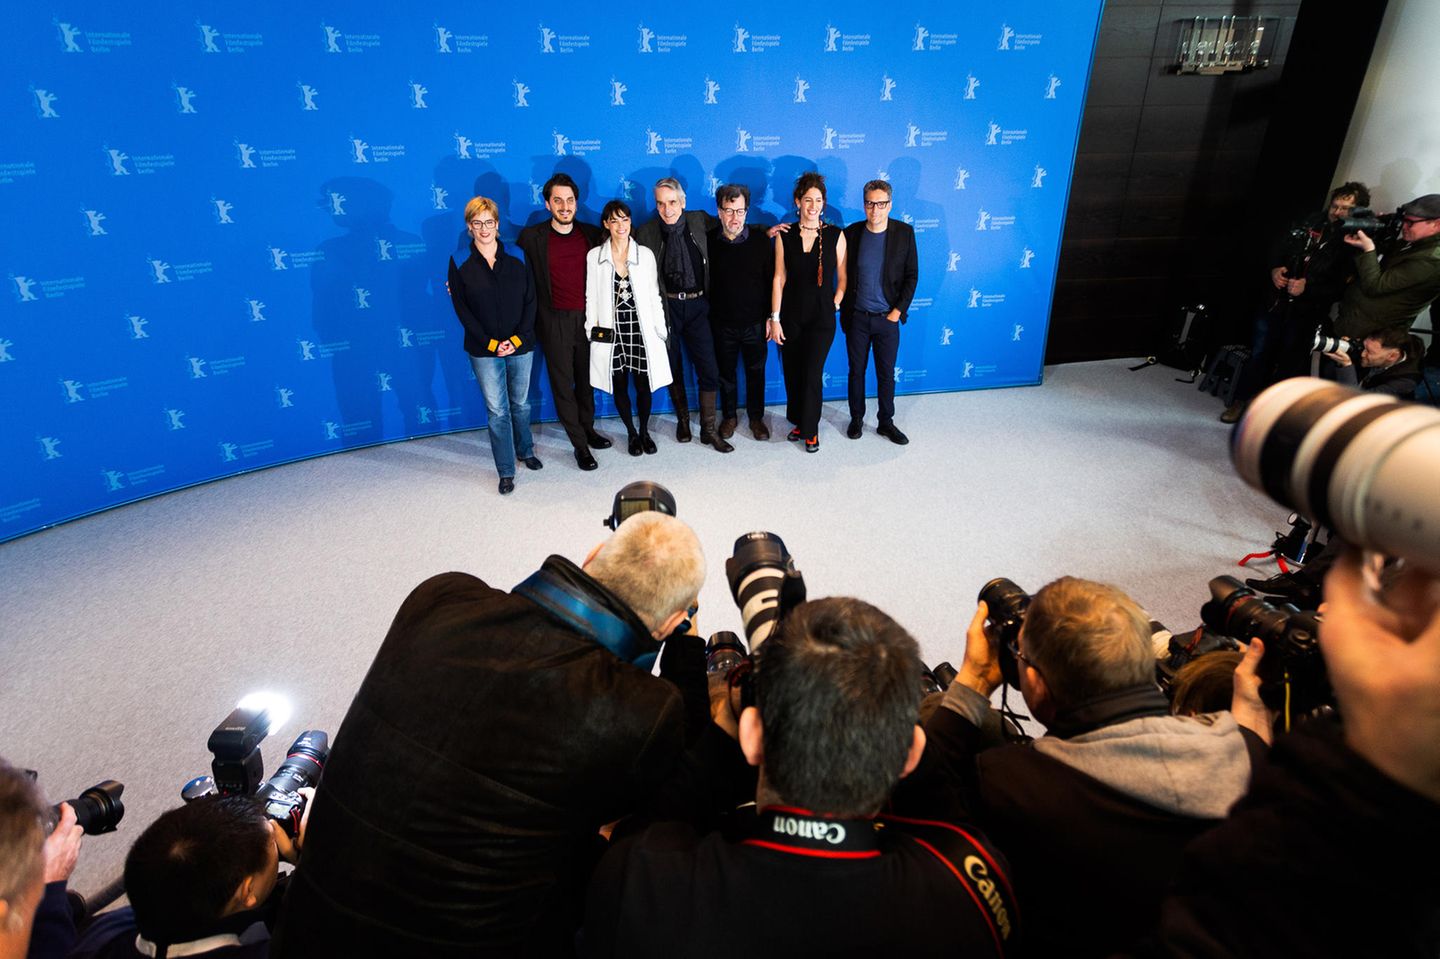 Das ist die diesjährige Berlinale-Jury! Mit dabei sind Bettina Brokemper, Luca Marinelli, Bérénice Bejo, Jeremy Irons, Kenneth Lonergan, Annemarie Jacir und Kleber Mendonça Filho.